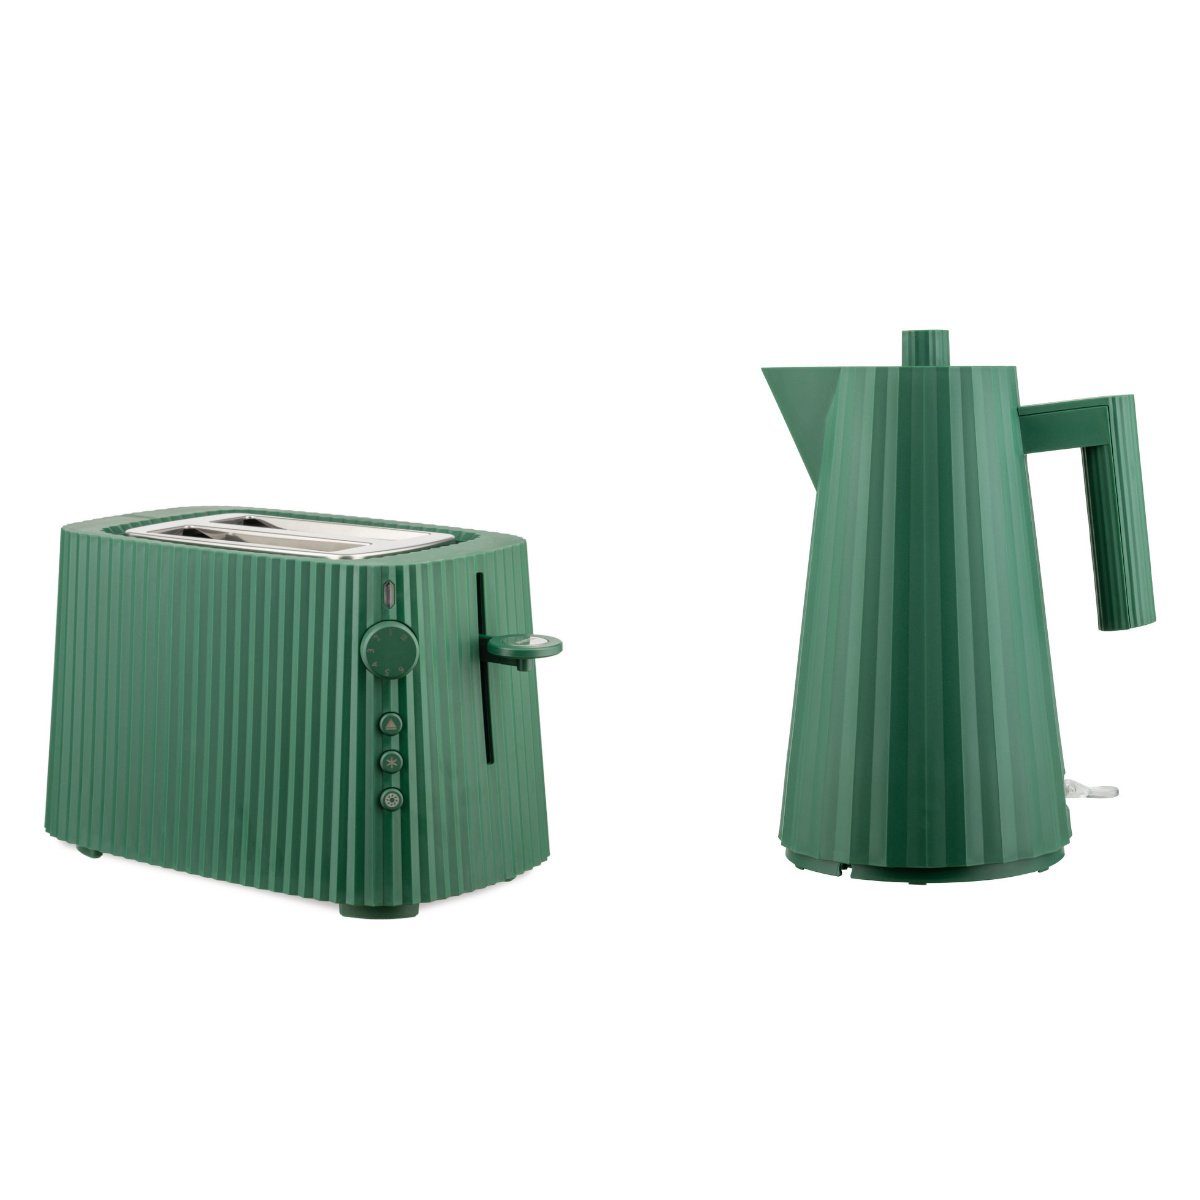 Wasserkocher Toaster Set + Plissé Wasserkocher Alessi - Grün Farbwahl